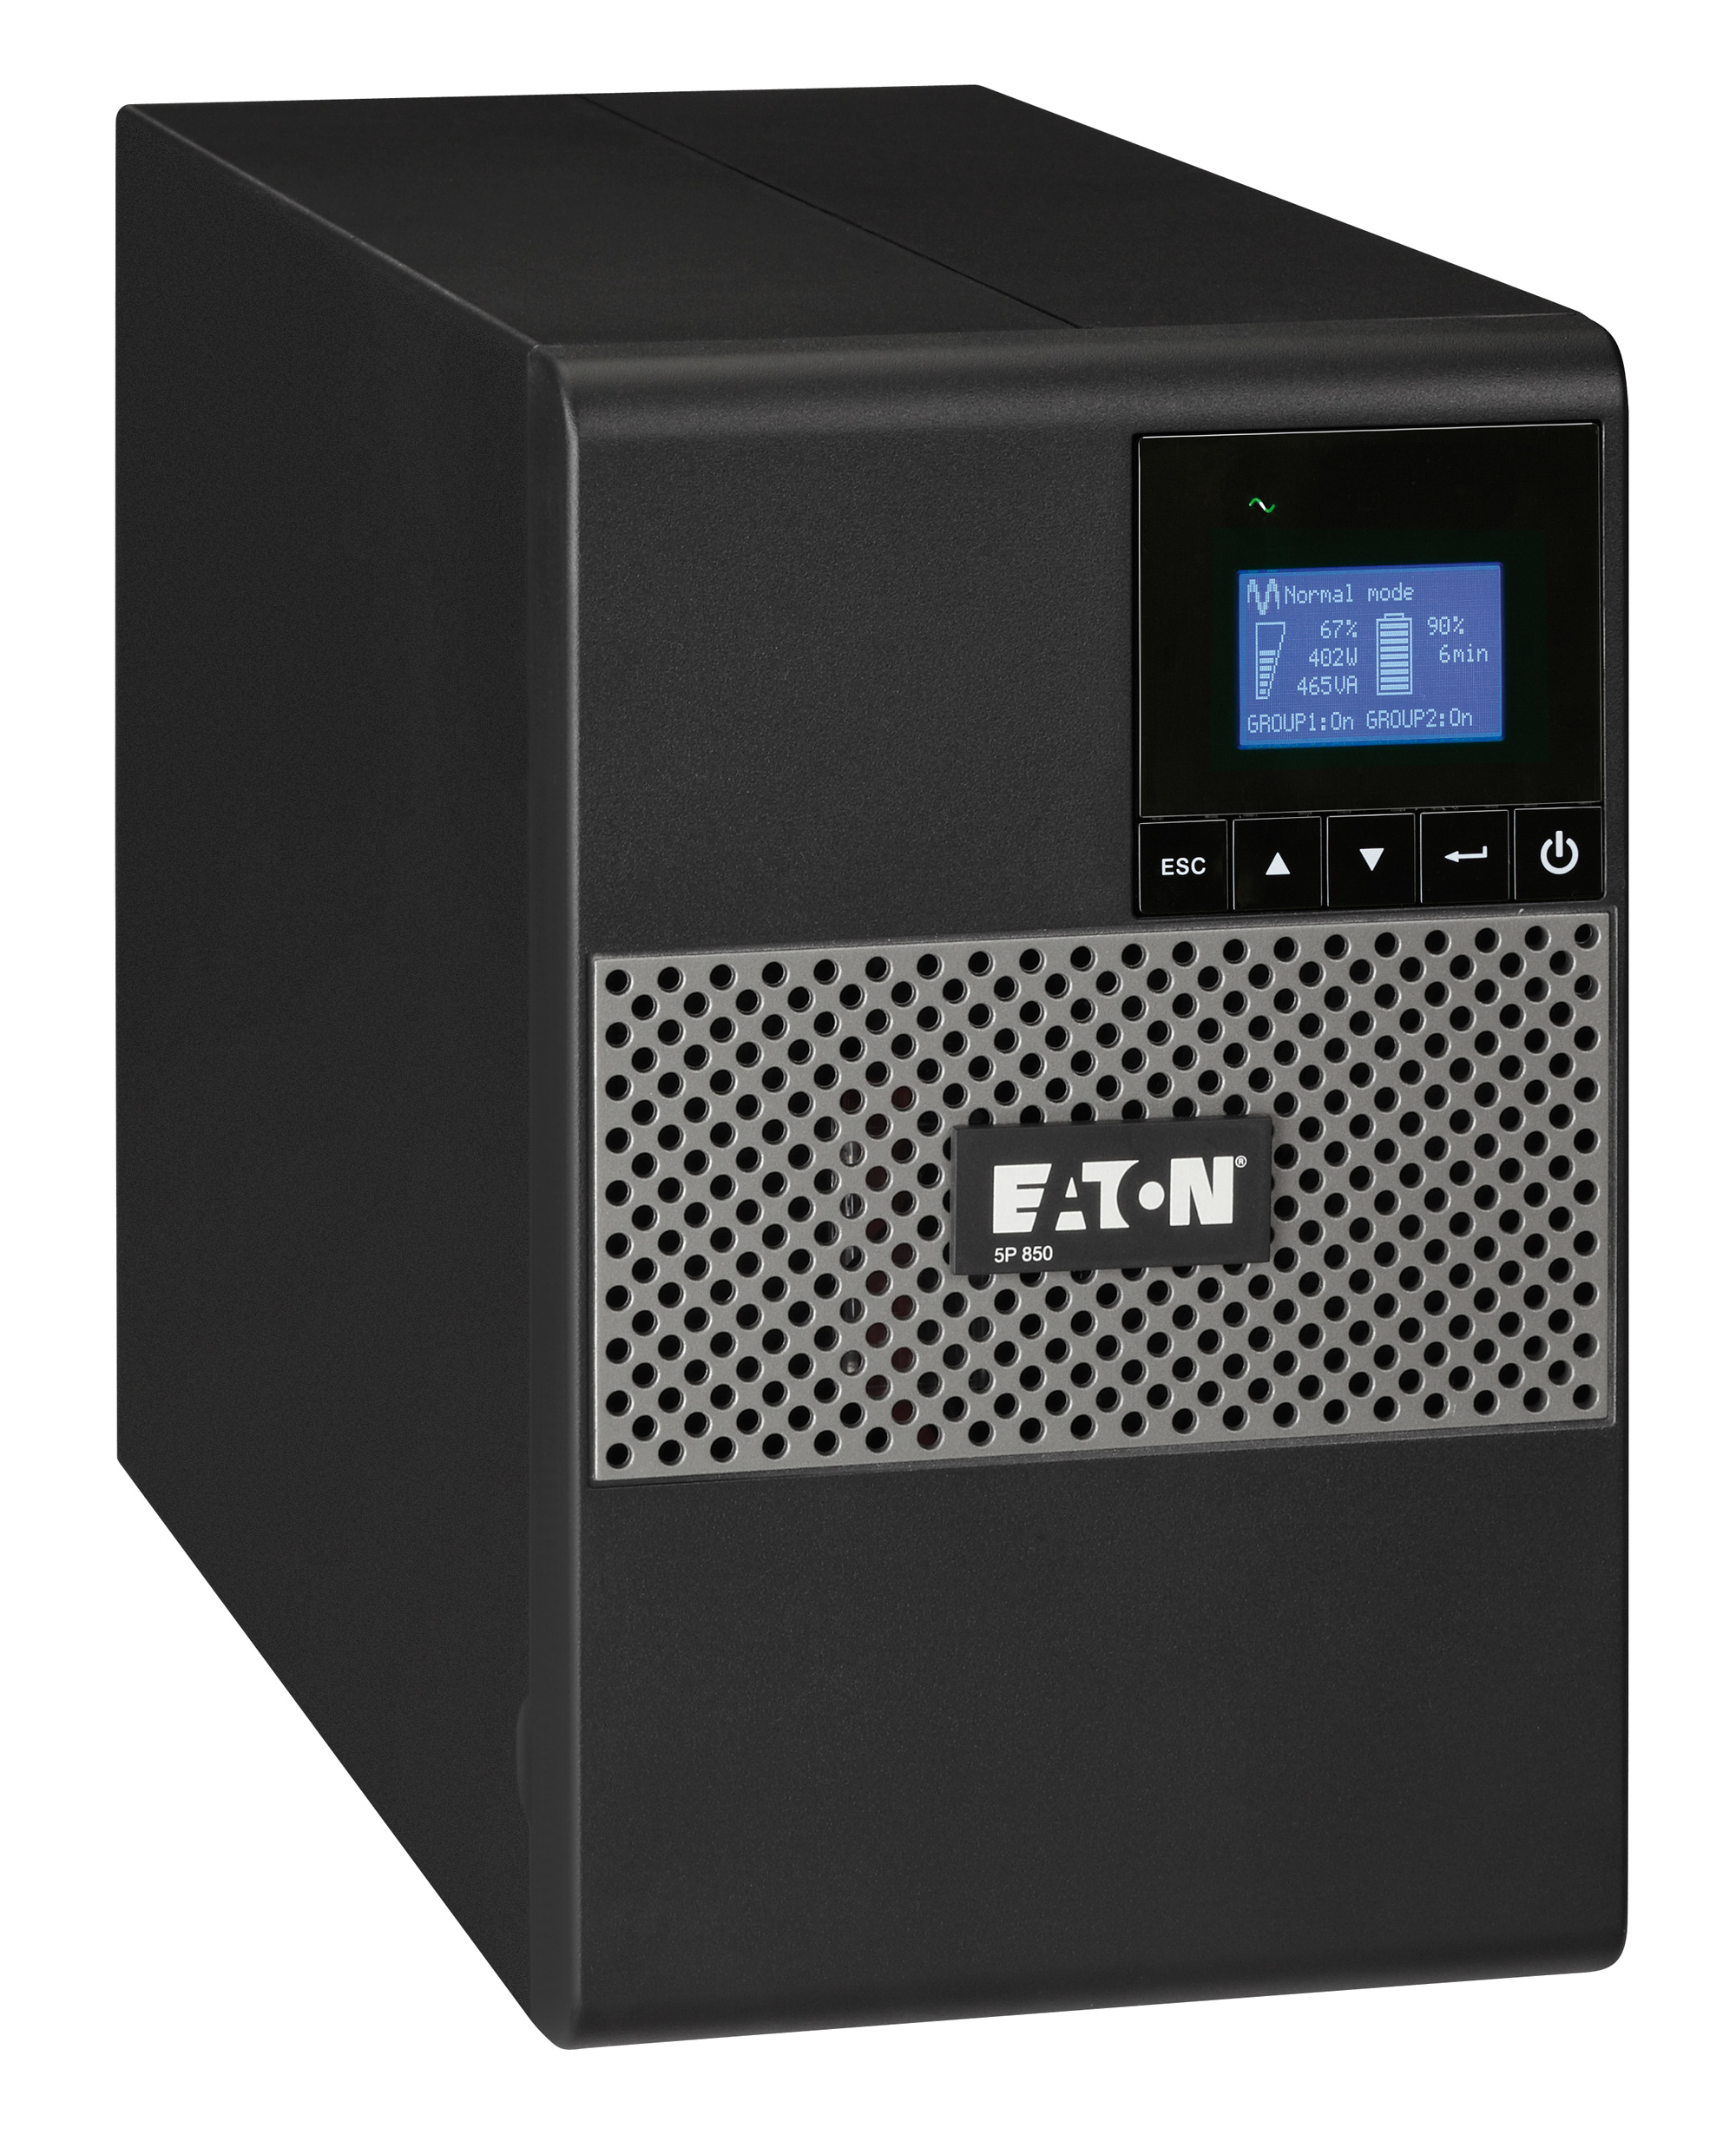 ИБП Eaton 5P 850i, 850VA, 600W, IEC, розеток - 6, USB, черный (5P850i)